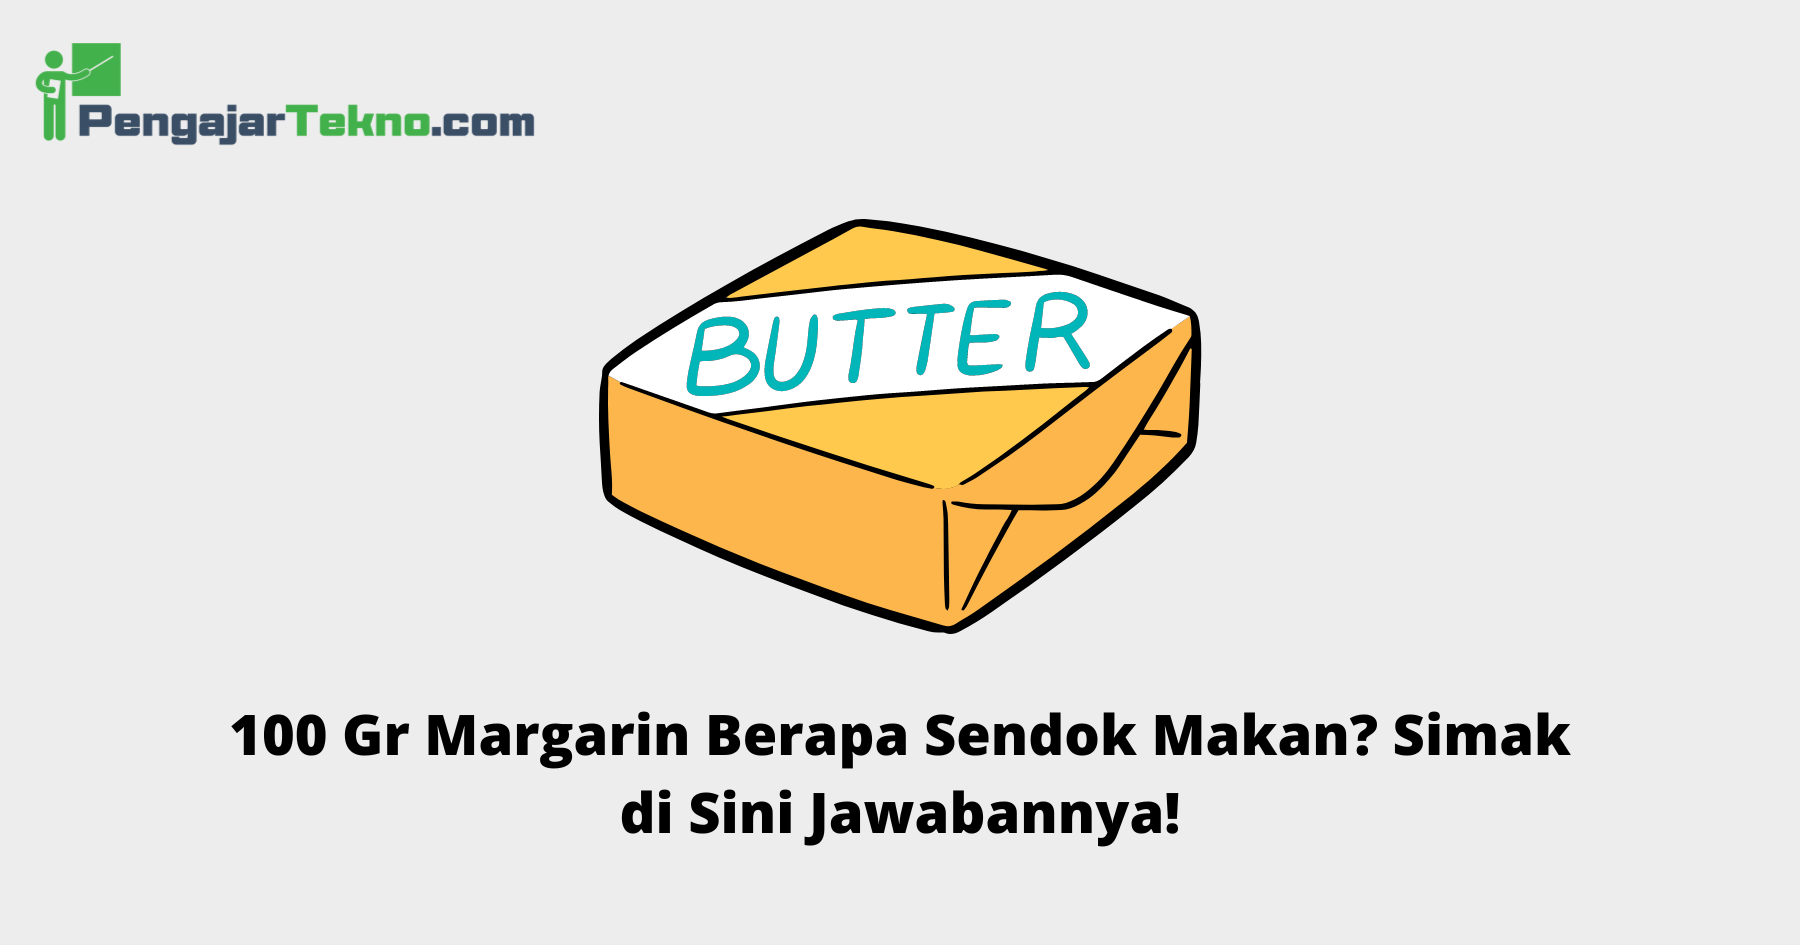 100 Gr Margarin Berapa Sendok Makan